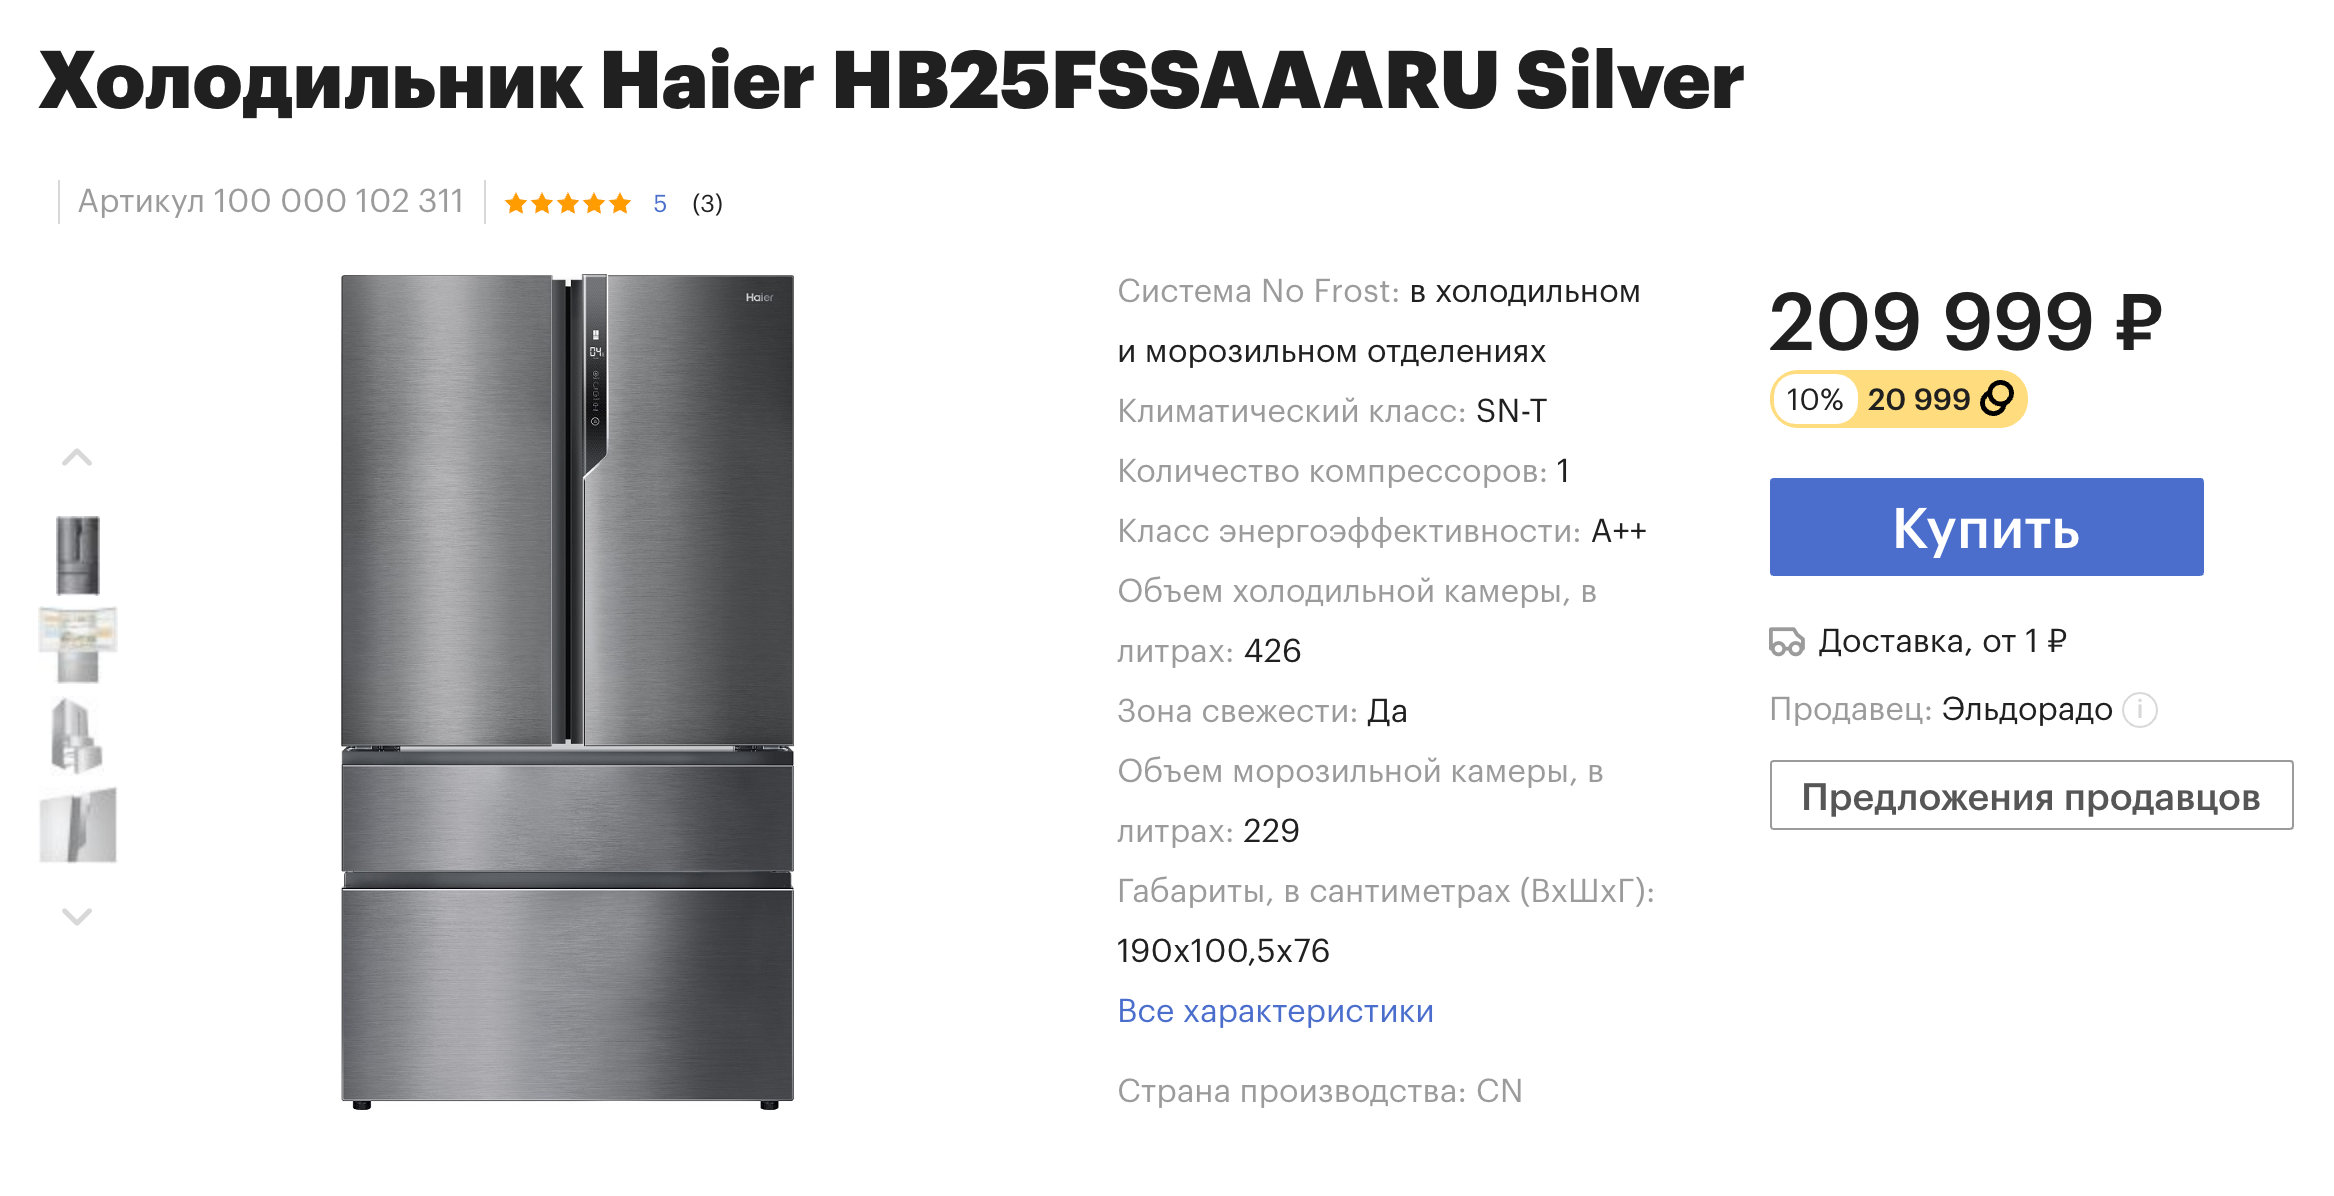 «Гудс» начисляет максимум 20 000 бонусных рублей в течение тридцати дней, но этот холодильник — исключение. За него покупателю вернут бонусами 20 999 ₽, которые можно потратить на другие покупки в этом магазине